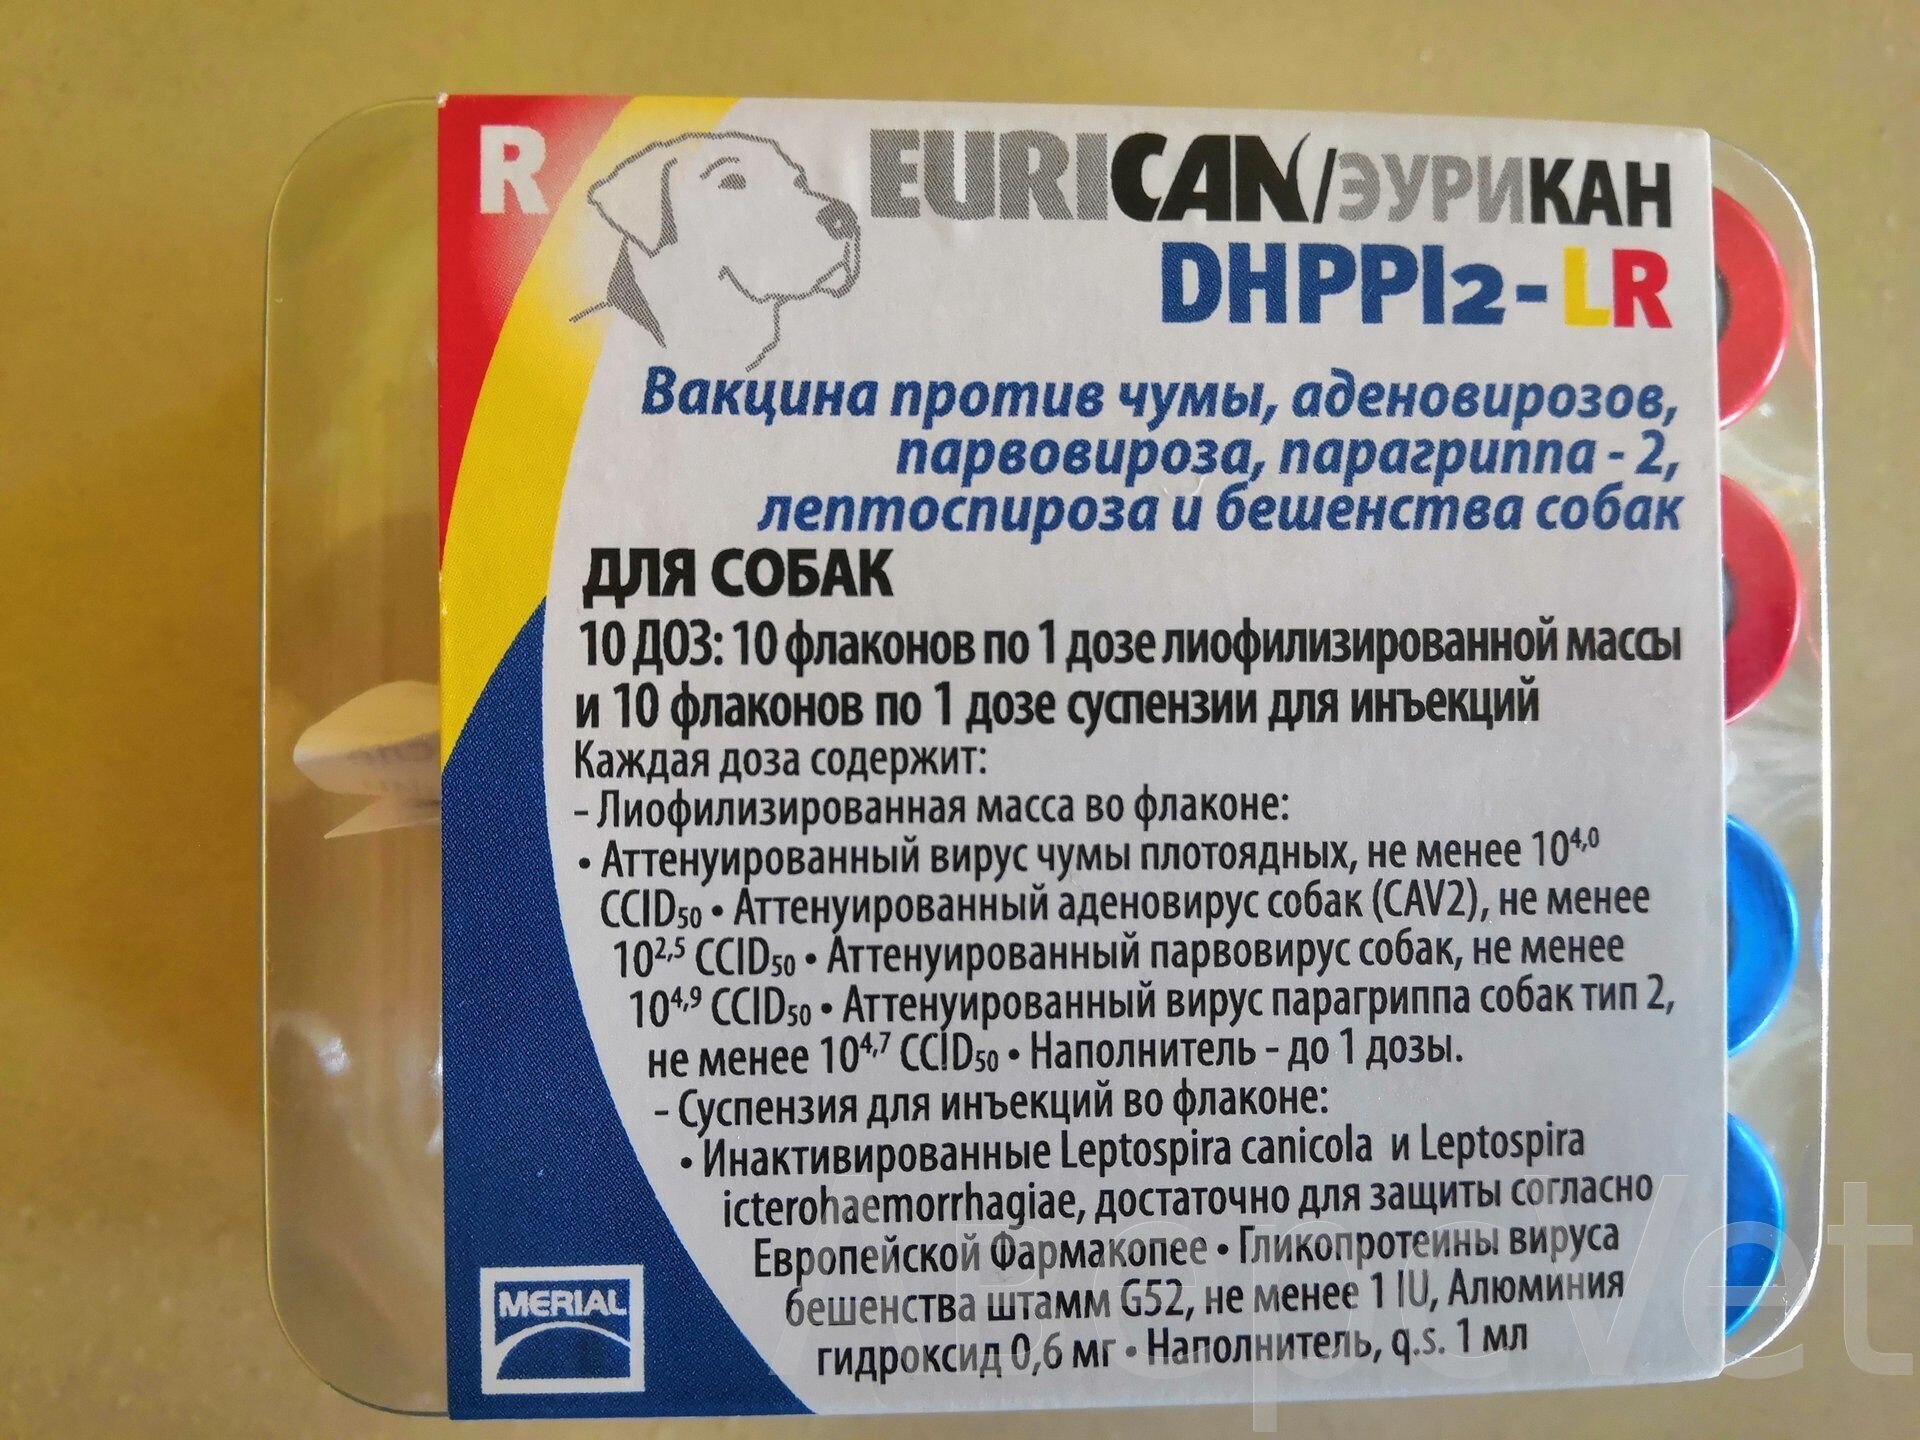 Купить вакцину эурикан в москве. Eurican dhppi2. Вакцина вангард7. Эурикан dhppi2 вакцина для собак. Вакцина Эурикан dhppi2.